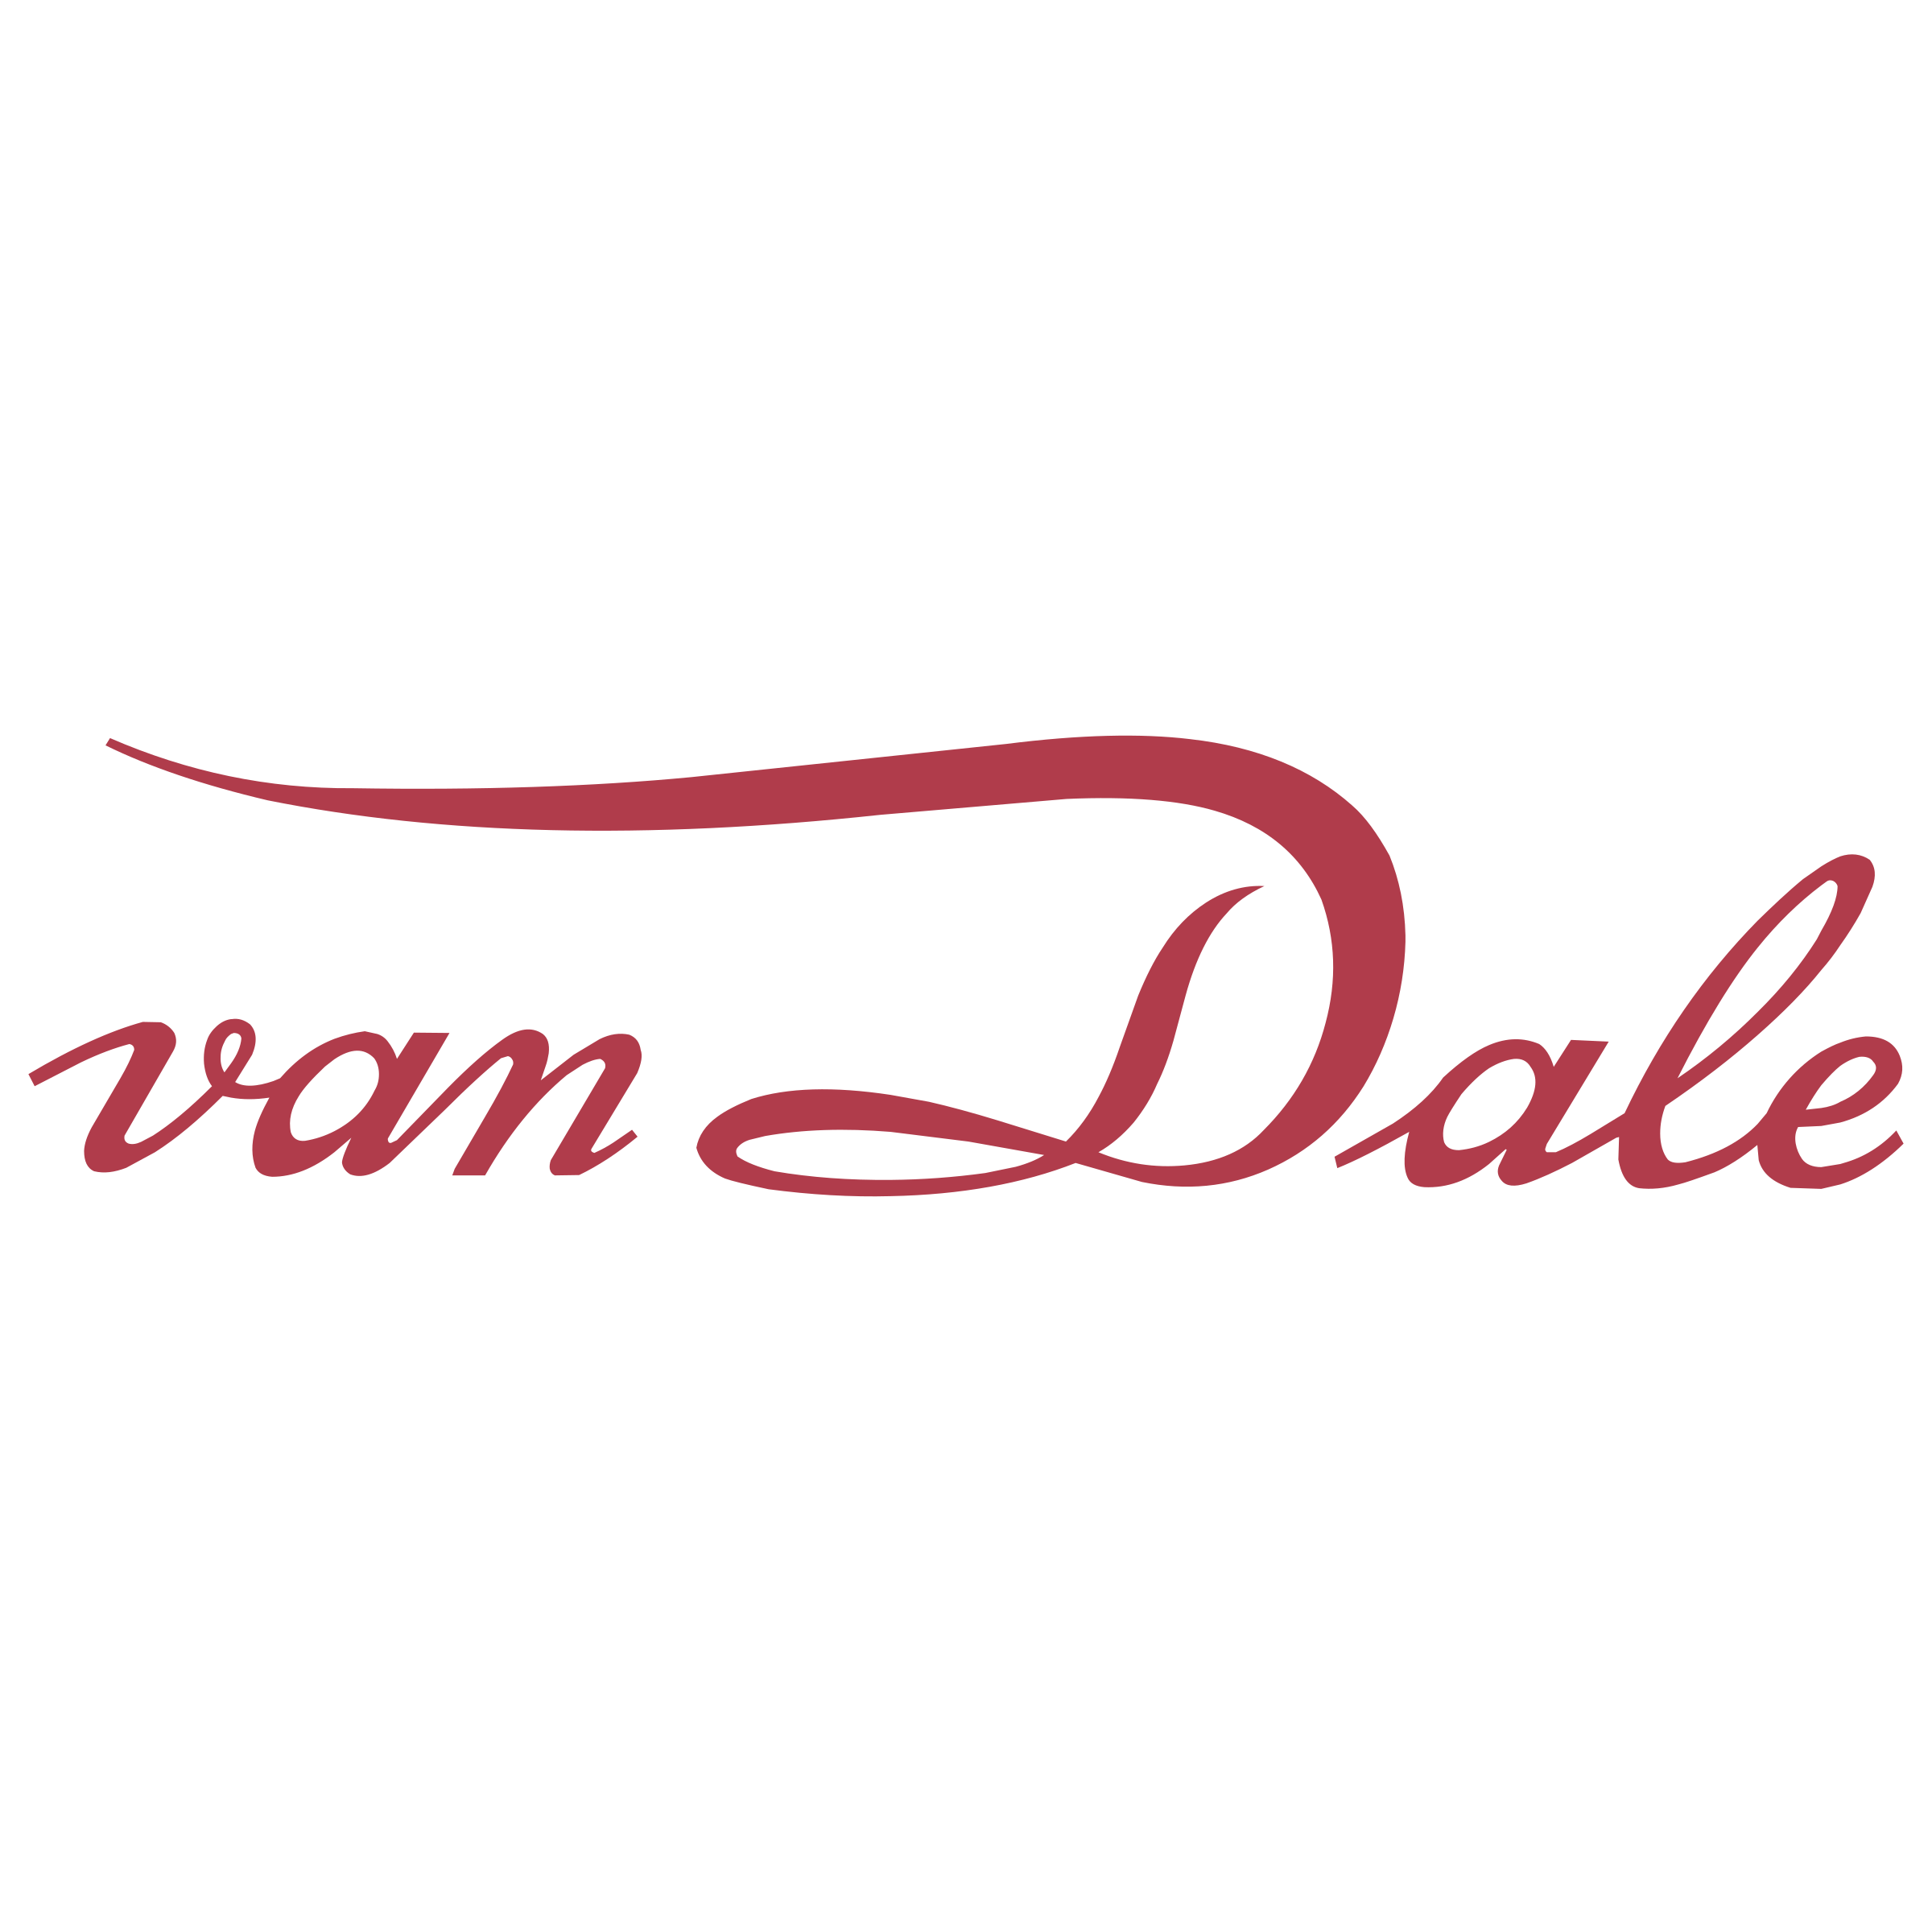 Dale Logo - Van Dale Logo PNG Transparent & SVG Vector